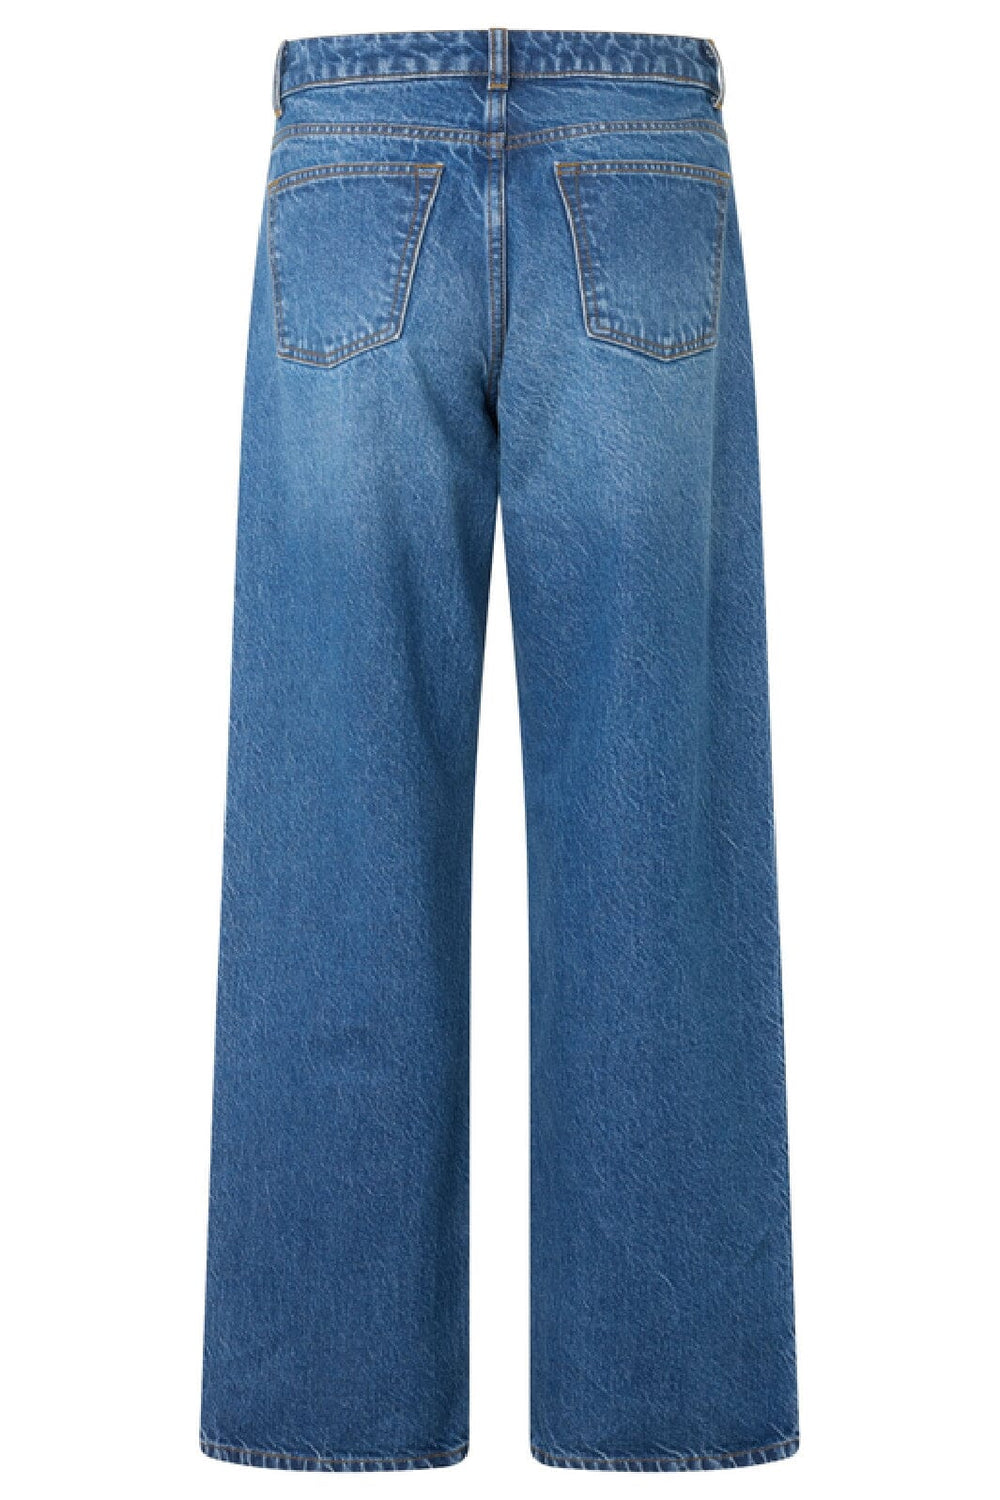 Forudbestilling - Global Funk - Cadian-G - P32 Vintage Blue Wash Jeans 